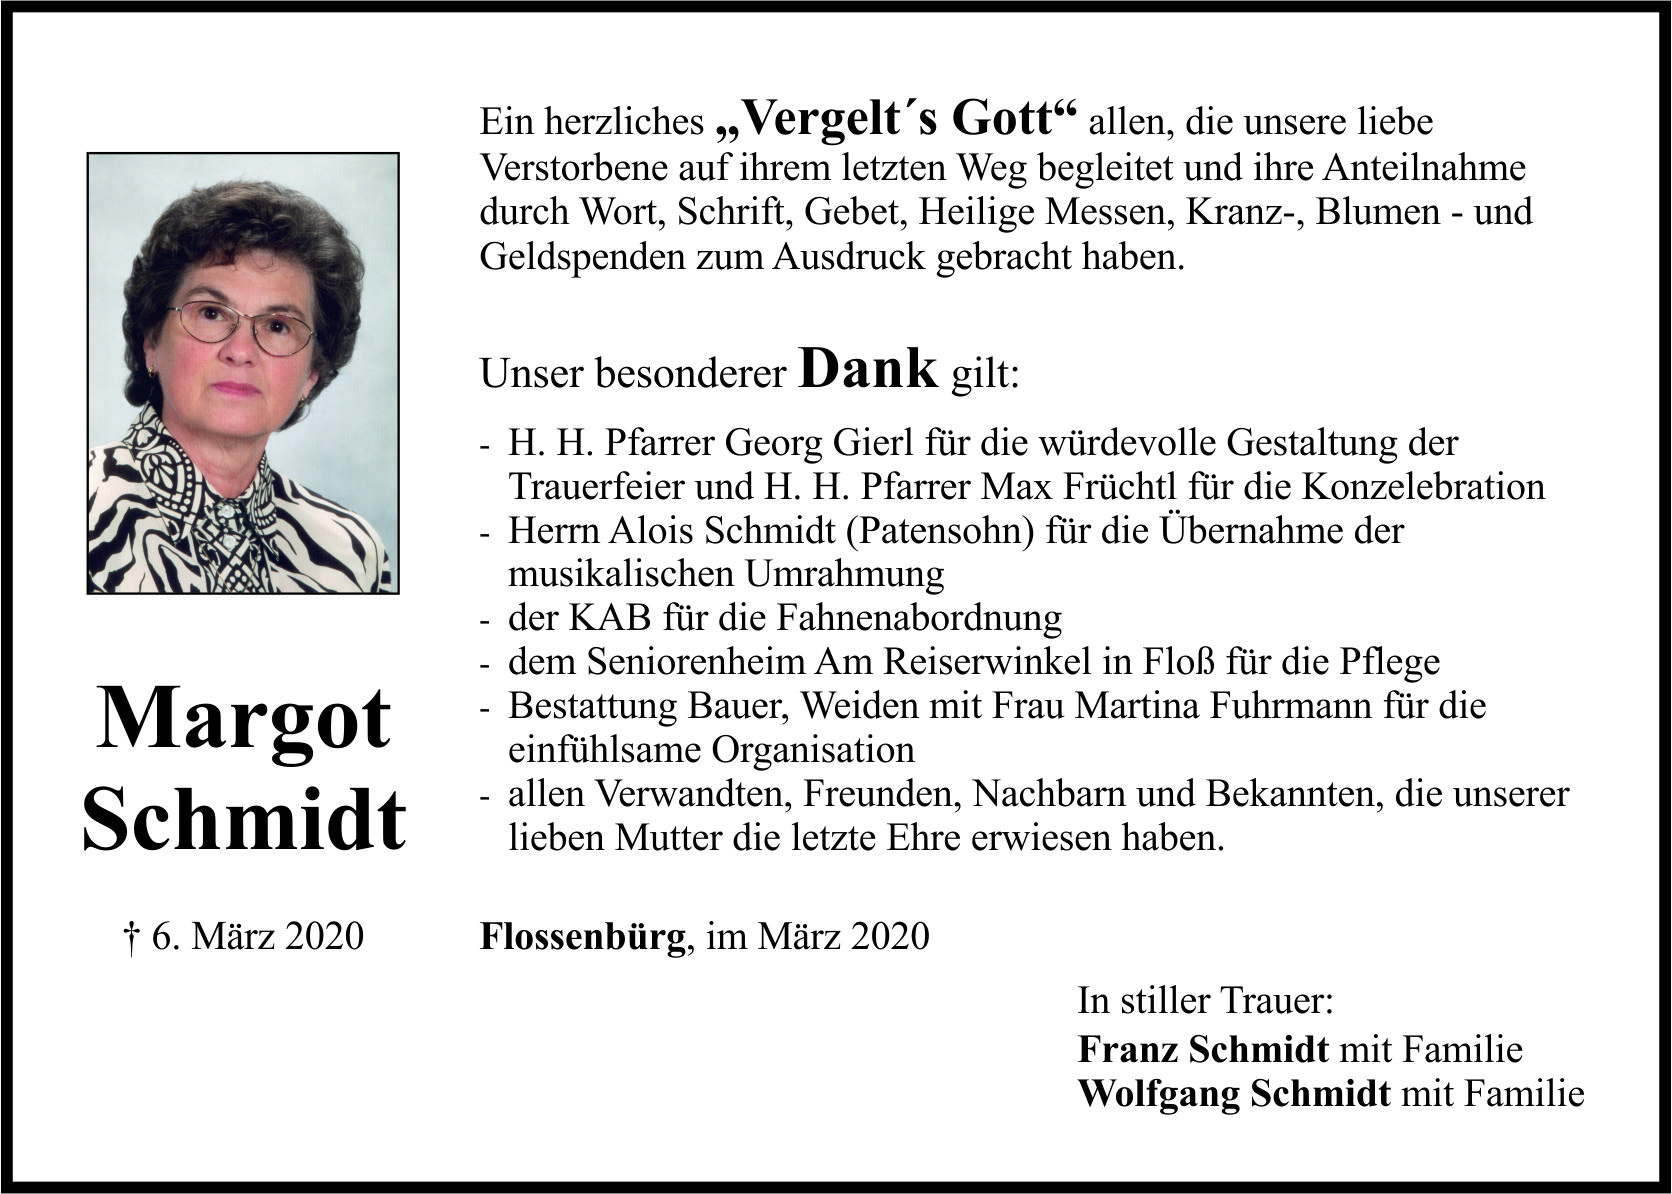 Danksagung Margot Schmidt, Flossenbürg